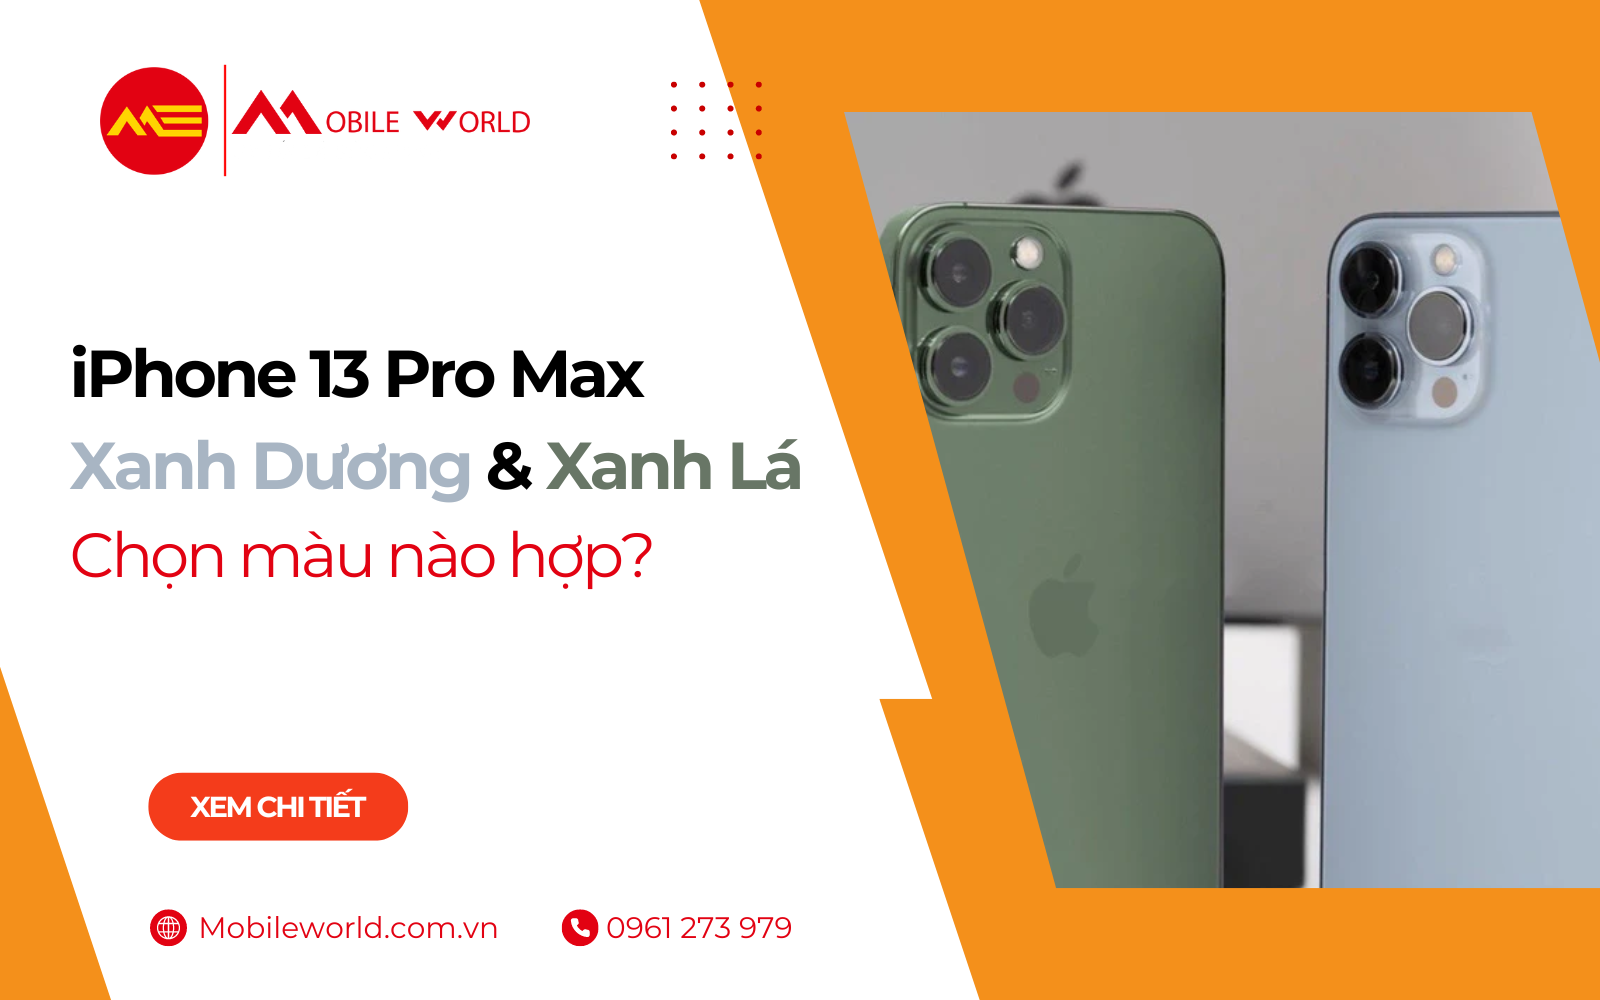 iPhone 13 Pro Max Xanh Dương & Xanh Lá: Chọn màu nào hợp?